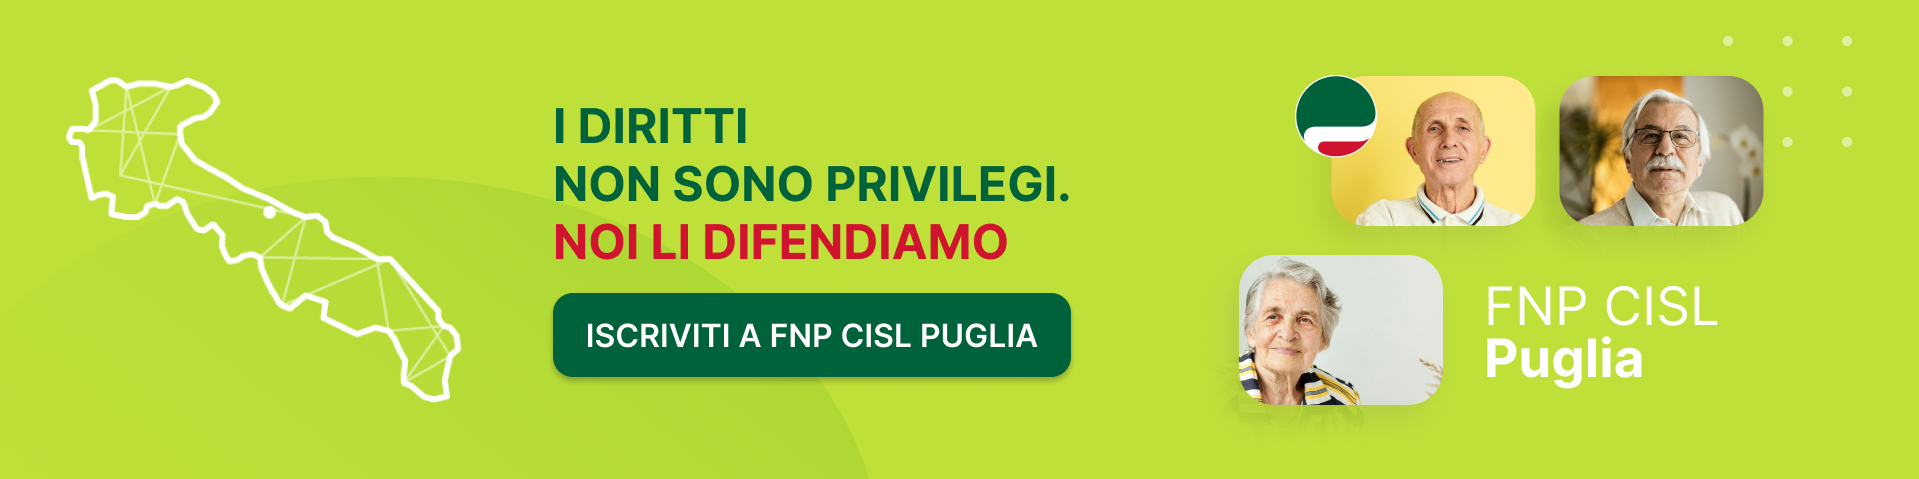 FNP CISL Puglia - I diritti non sono privilegi. NOI LI DIFENDIAMO